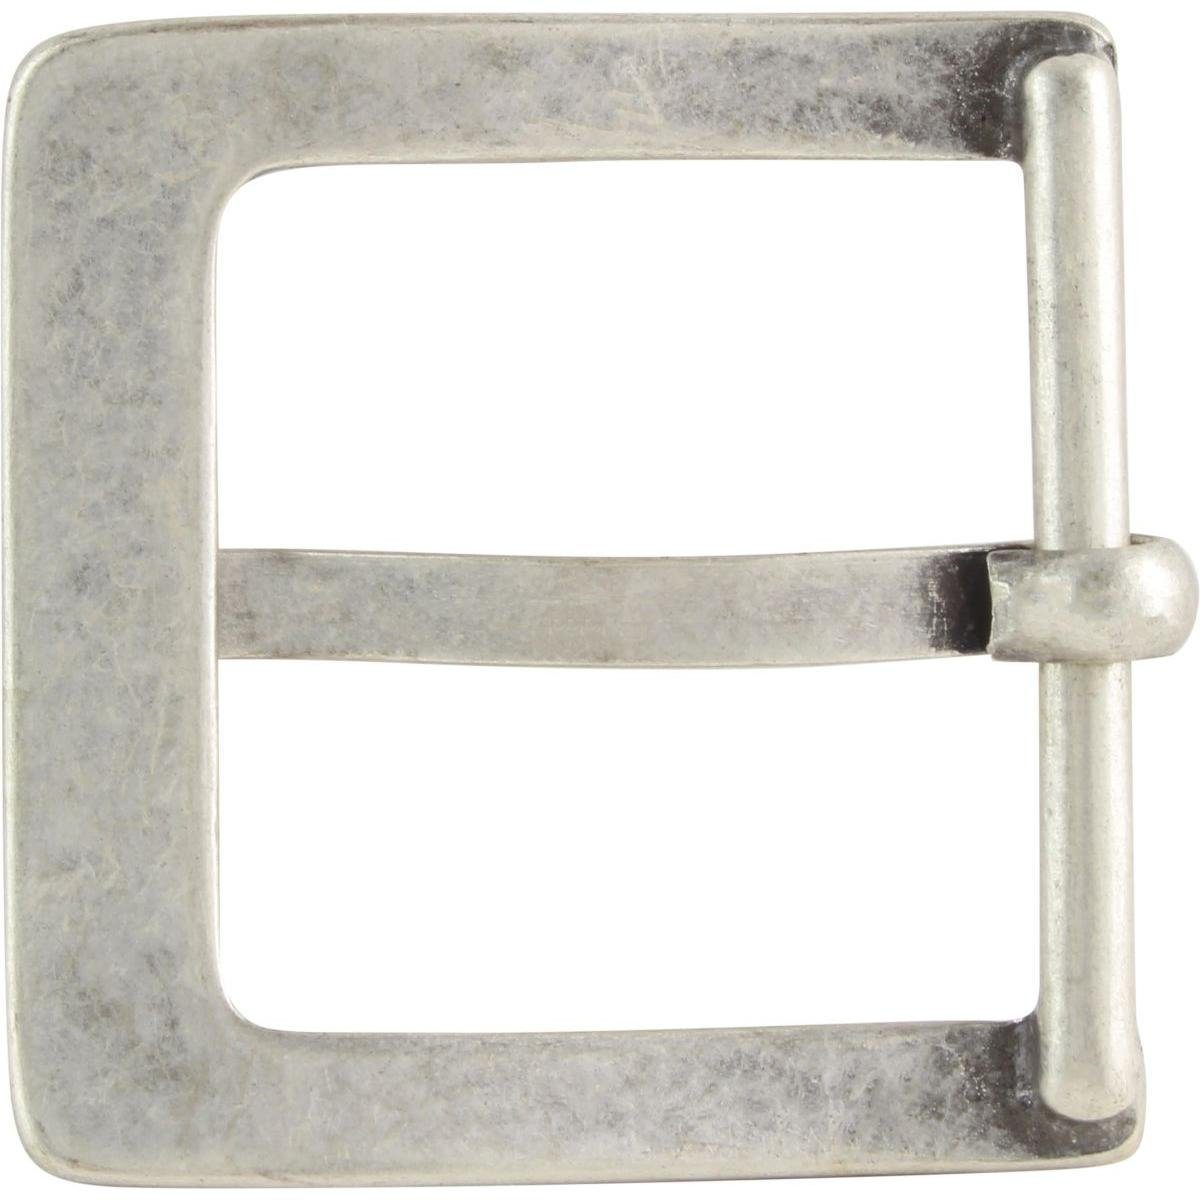 30mm - cm Wechselschließe 3,0 - Gürtelschließe - BELTINGER Gürtelschnalle Dorn-Schließe Gürtel